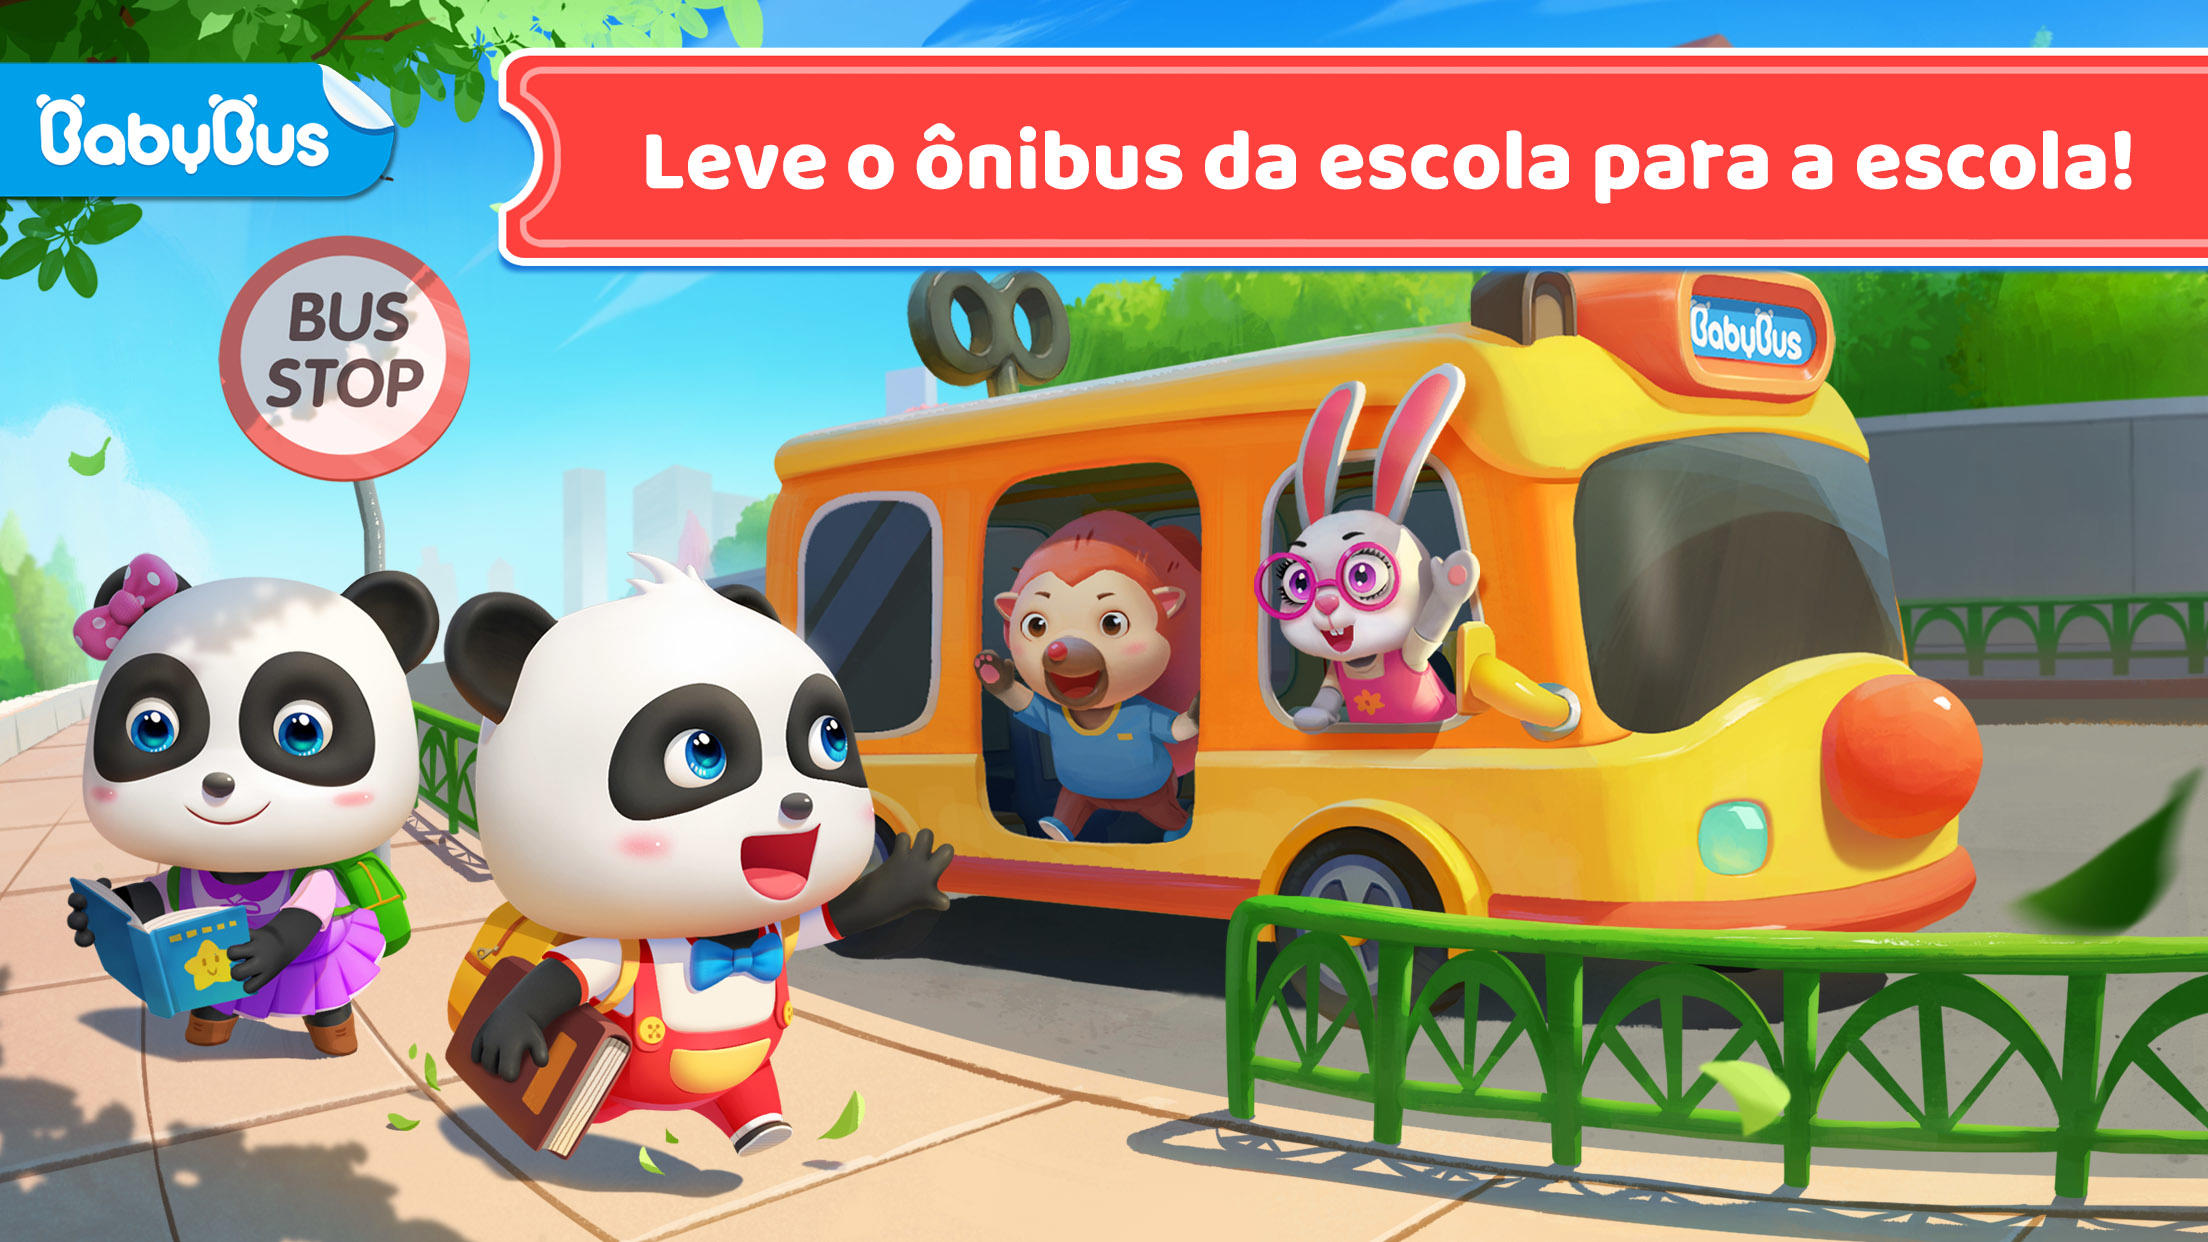 Screenshot 1 of Ônibus escolar do Bebê Panda 8.69.07.20